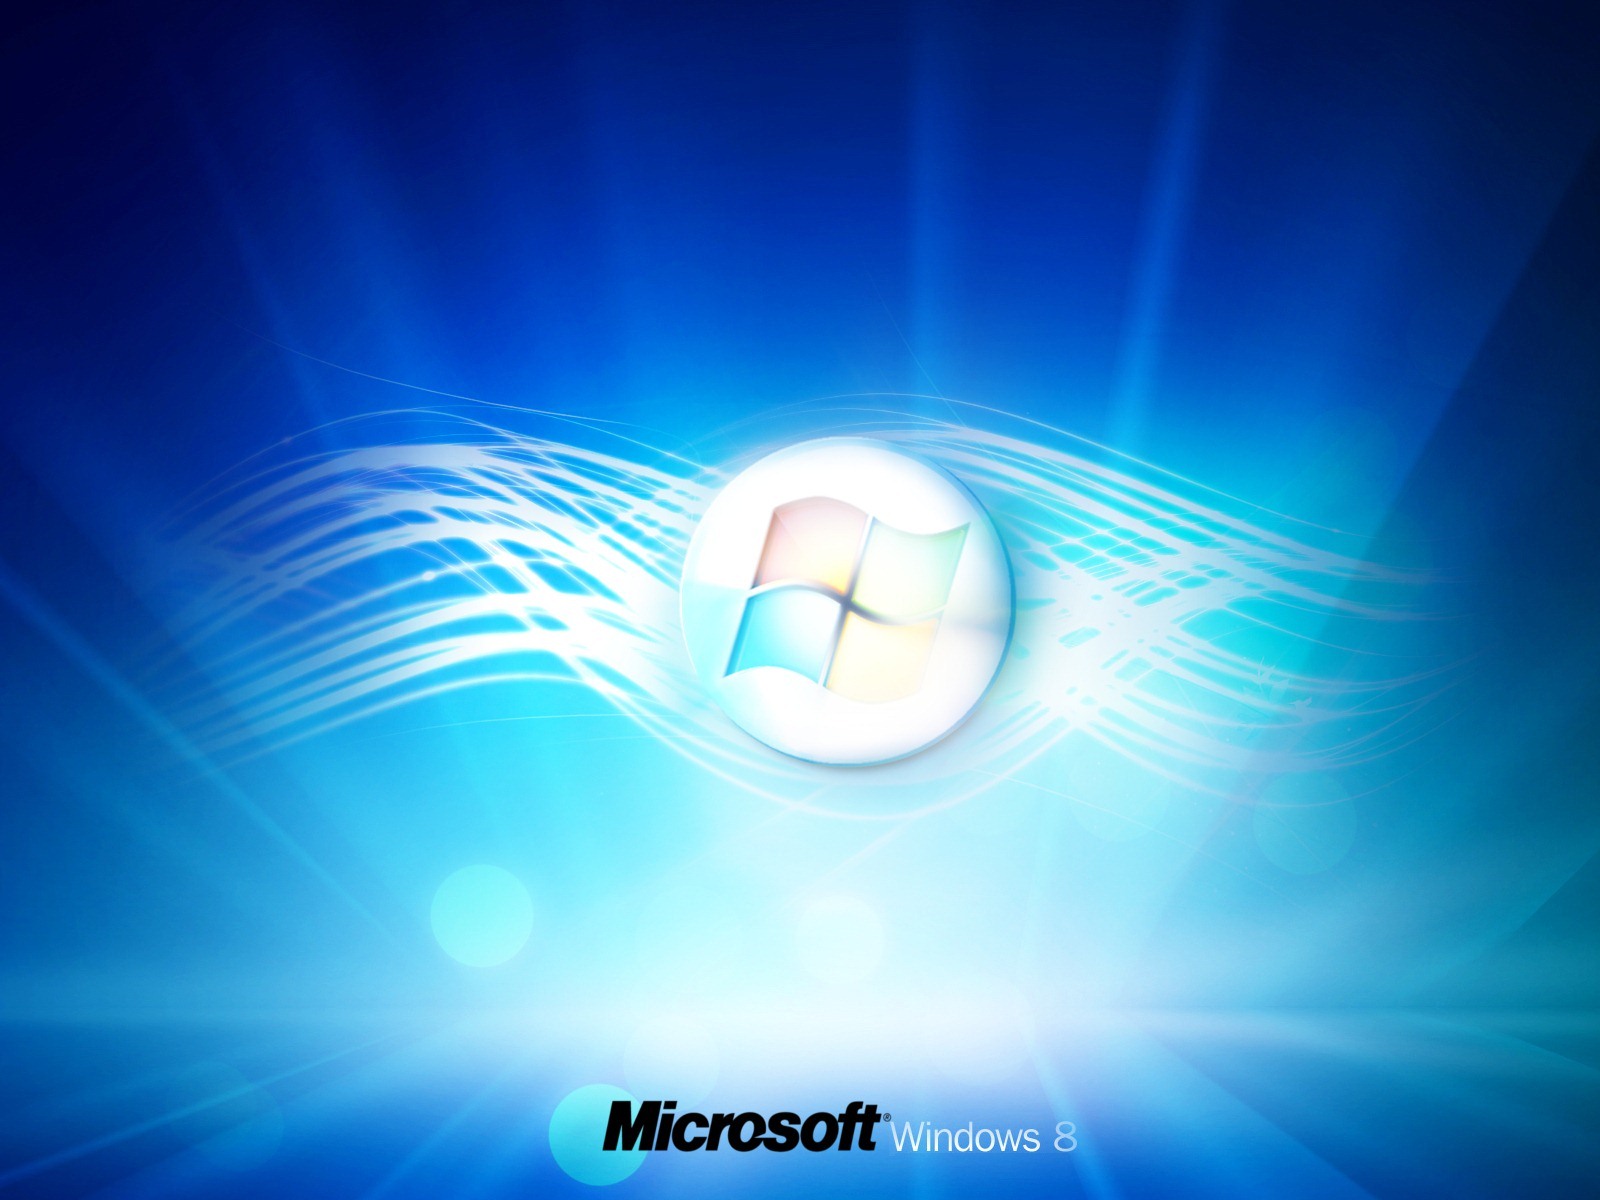 Windows 8 theme wallpaper (1) #3 - 1600x1200